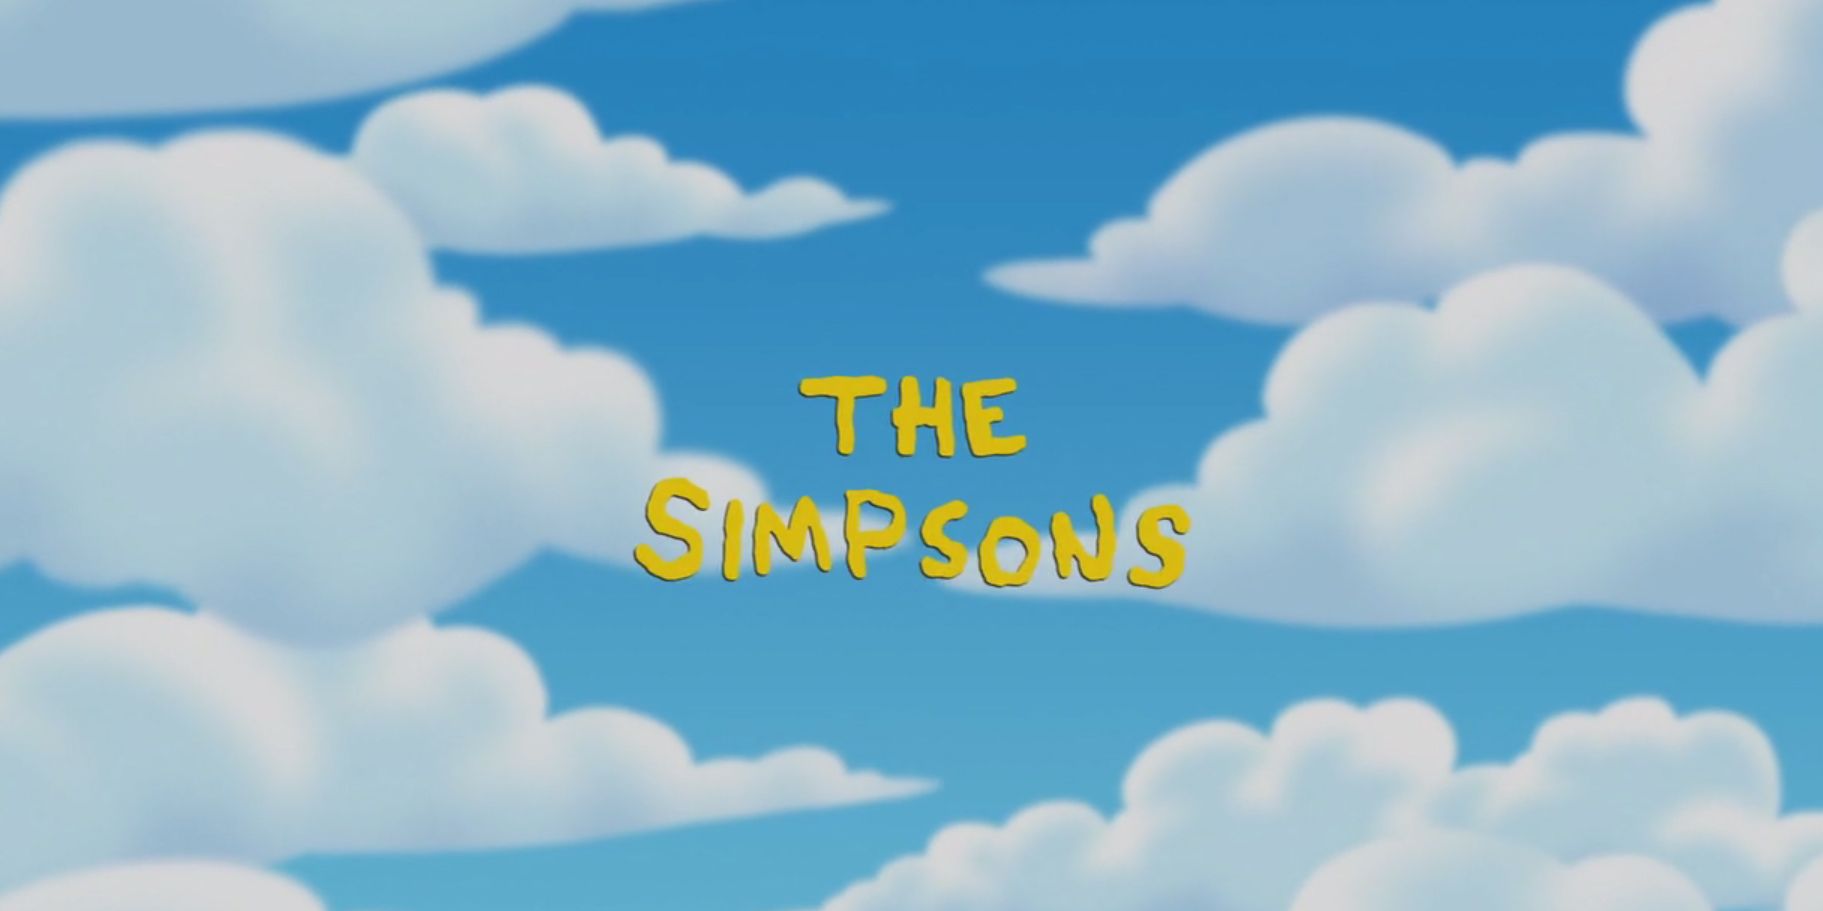 Download Abertura dos Simpsons é recriada usando apenas imagens de ...